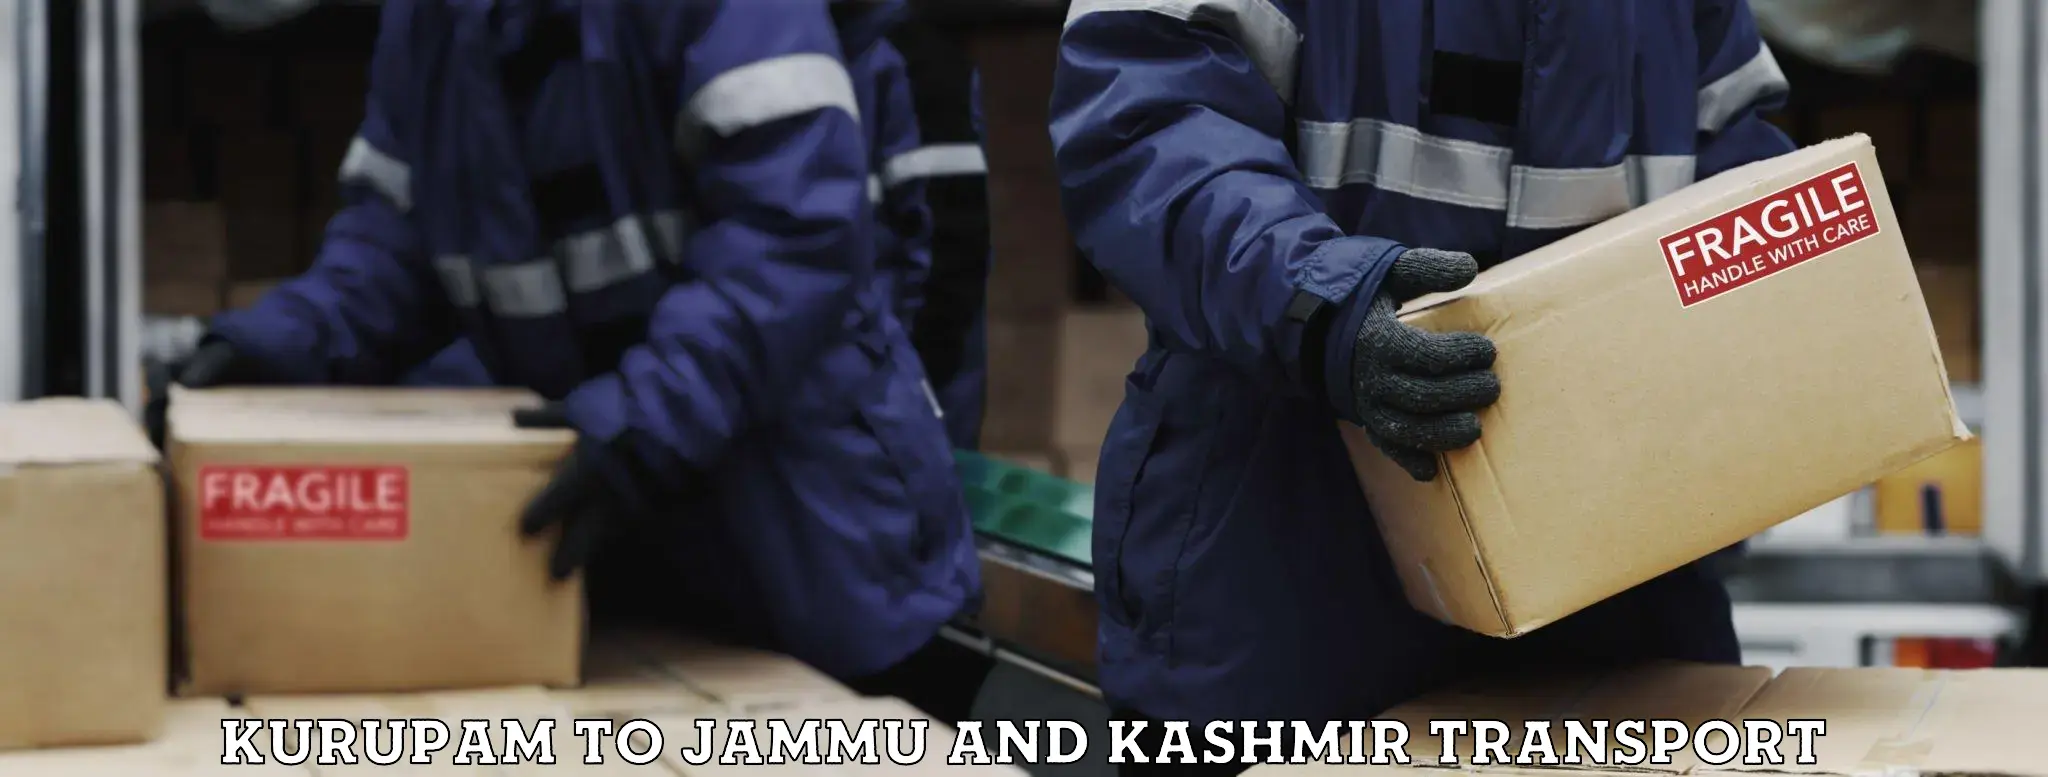 Bike shipping service Kurupam to Jammu